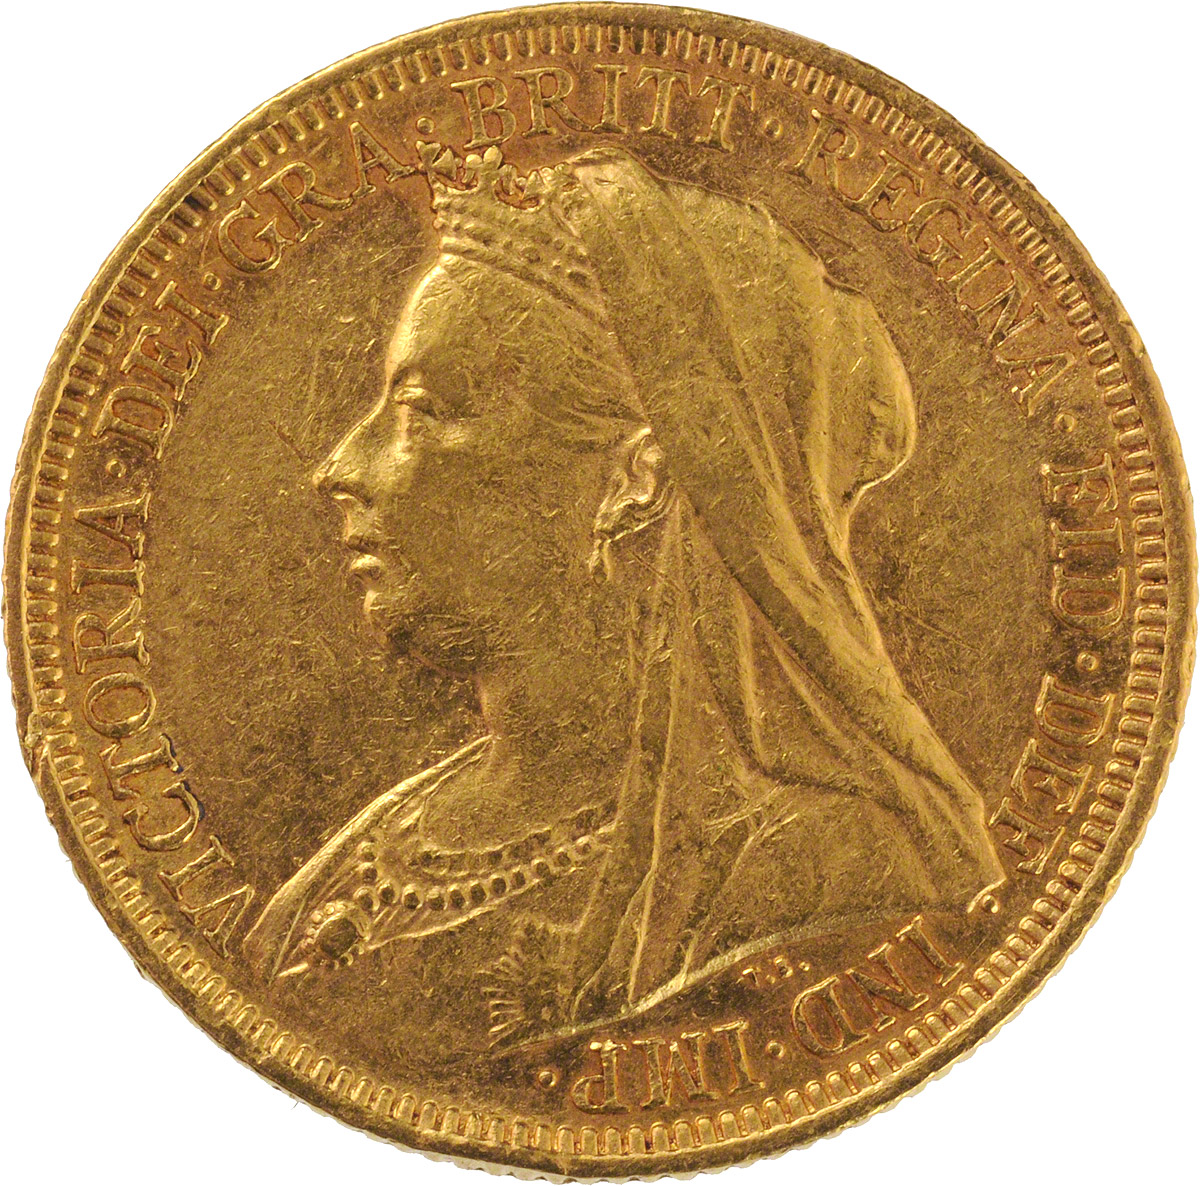 1895 Βικτώρια (Νομισματοκοπείο Σίδνεϊ)